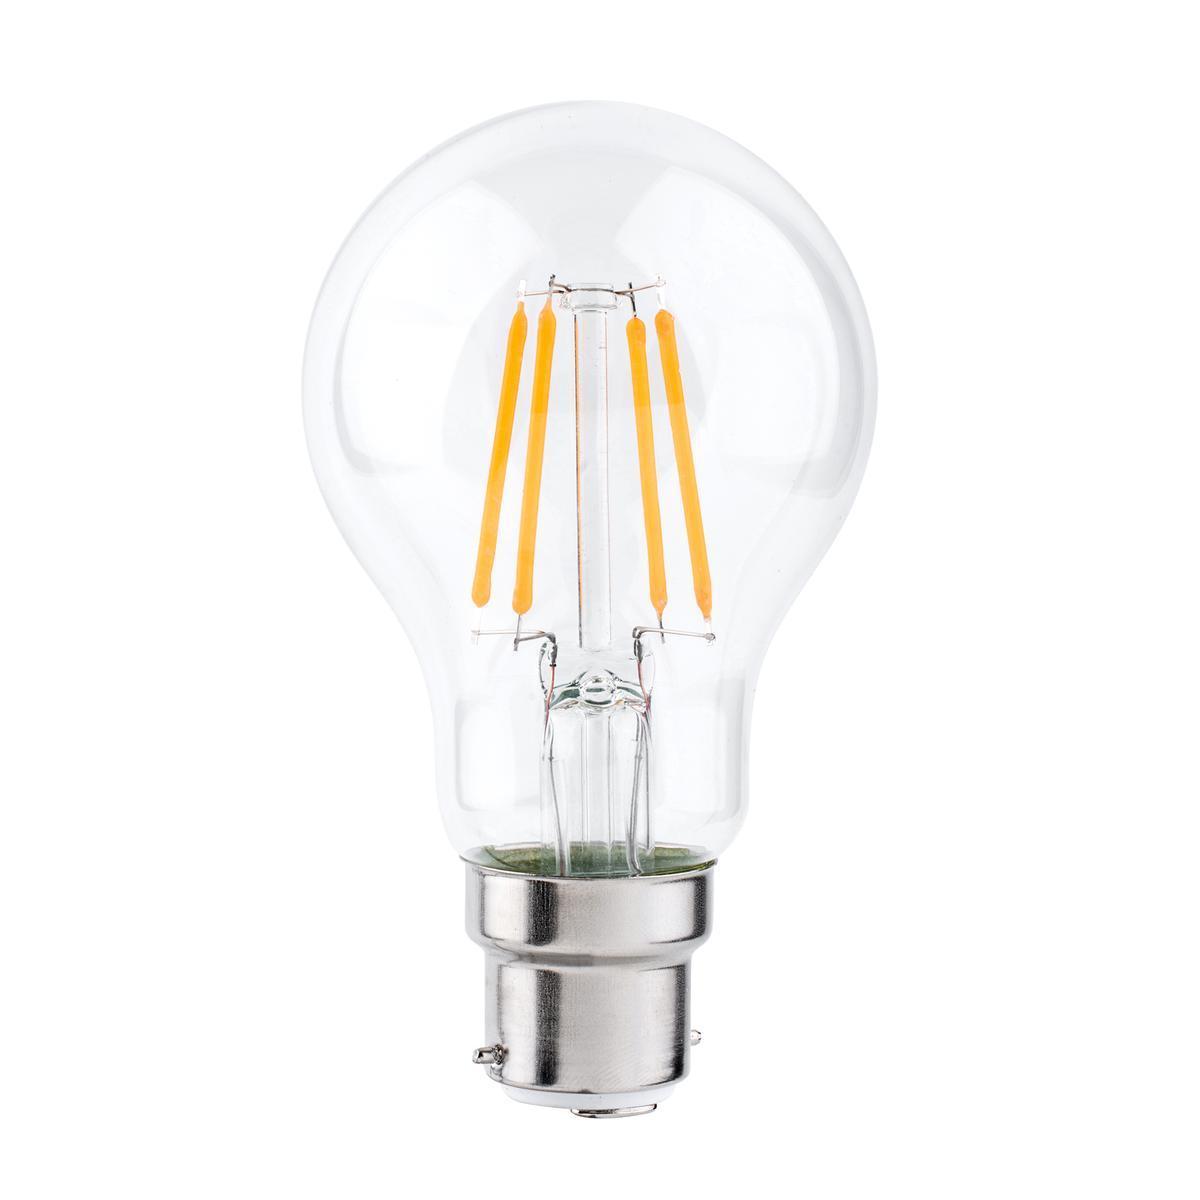 Ampoule à filaments LED A60 B22 - 800 LM - Transparent, blanc chaud